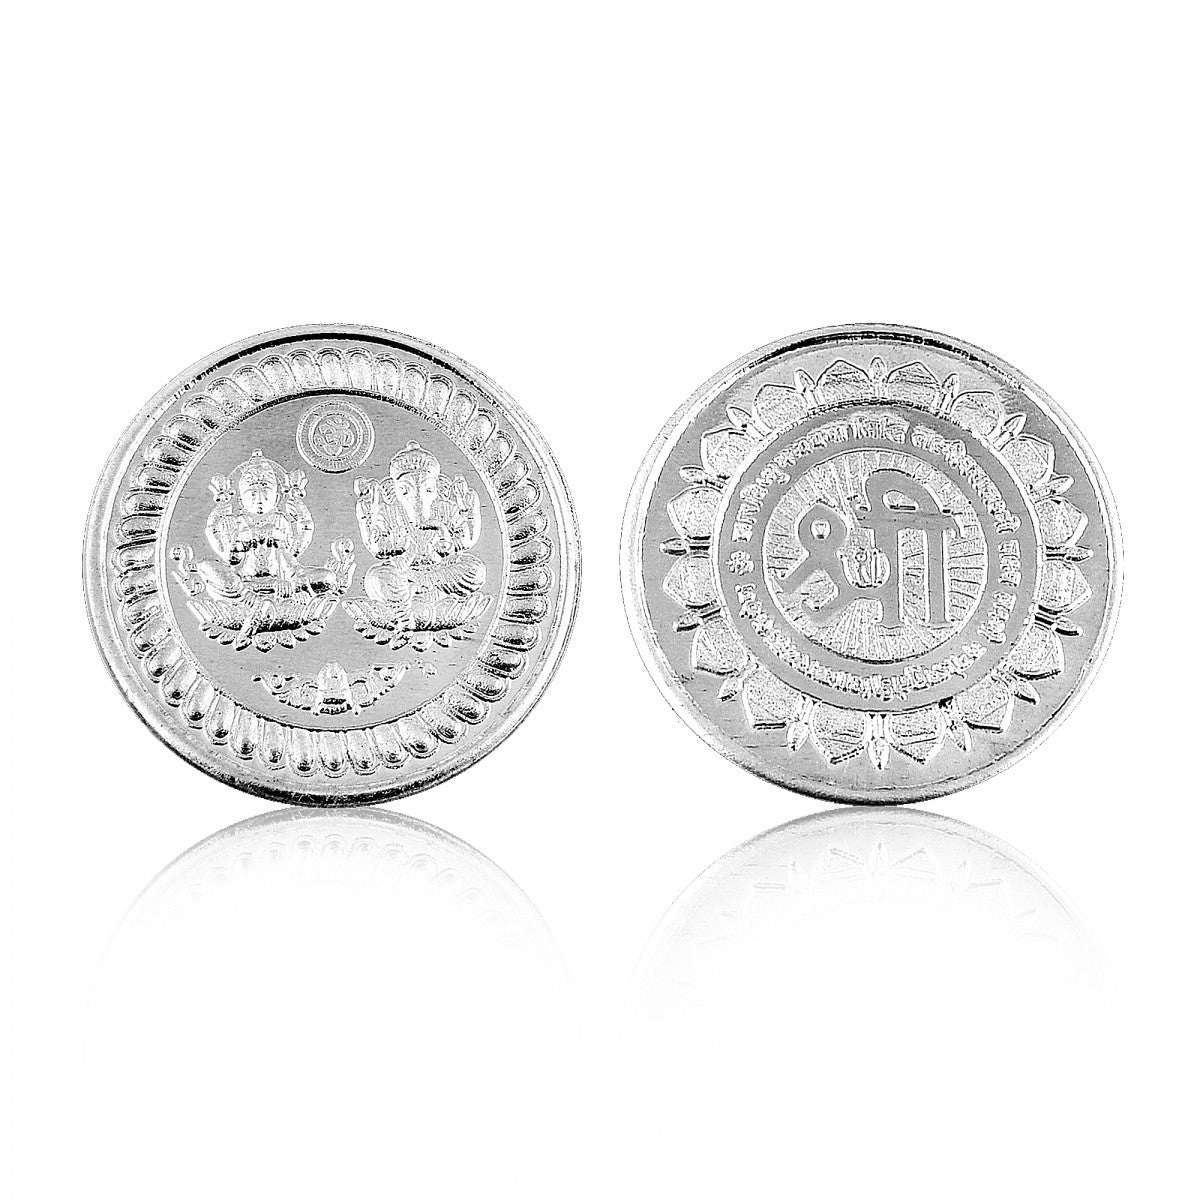 40 Gram (20 gm x2 Coin) Silver Coins